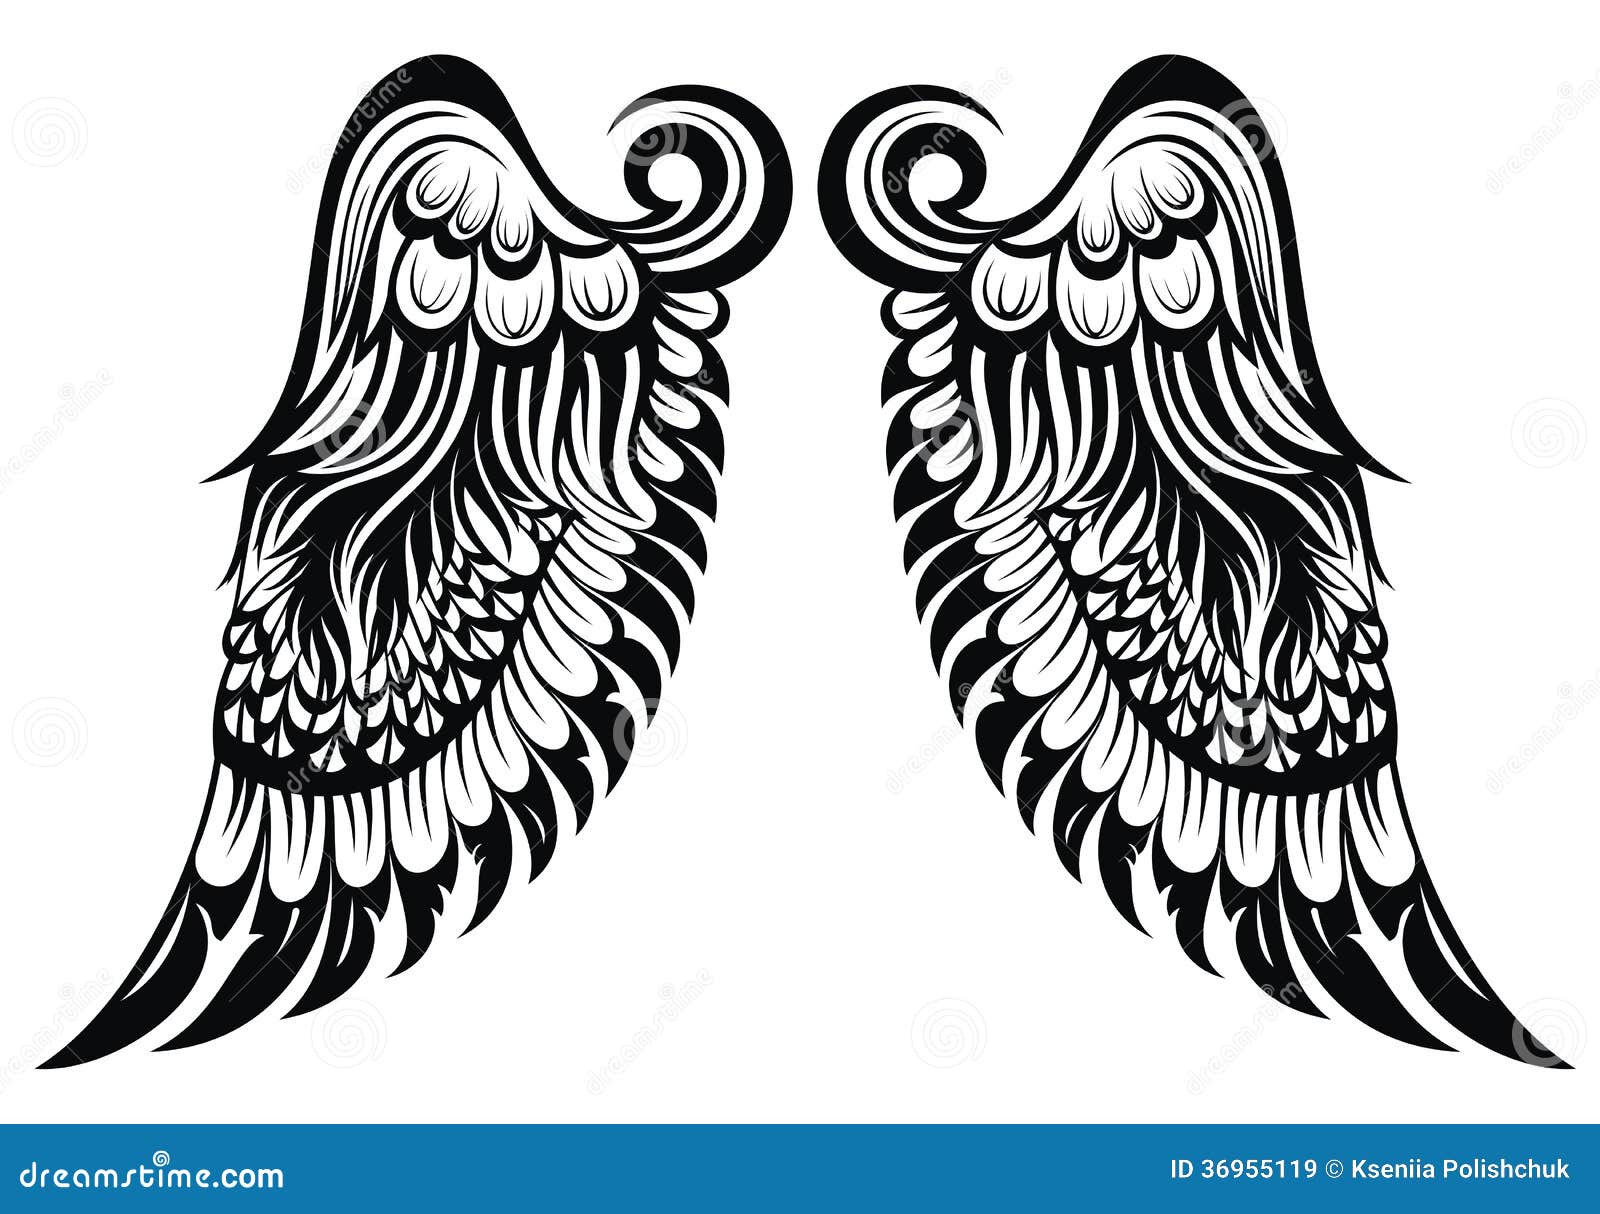 Drawn Angel Wings